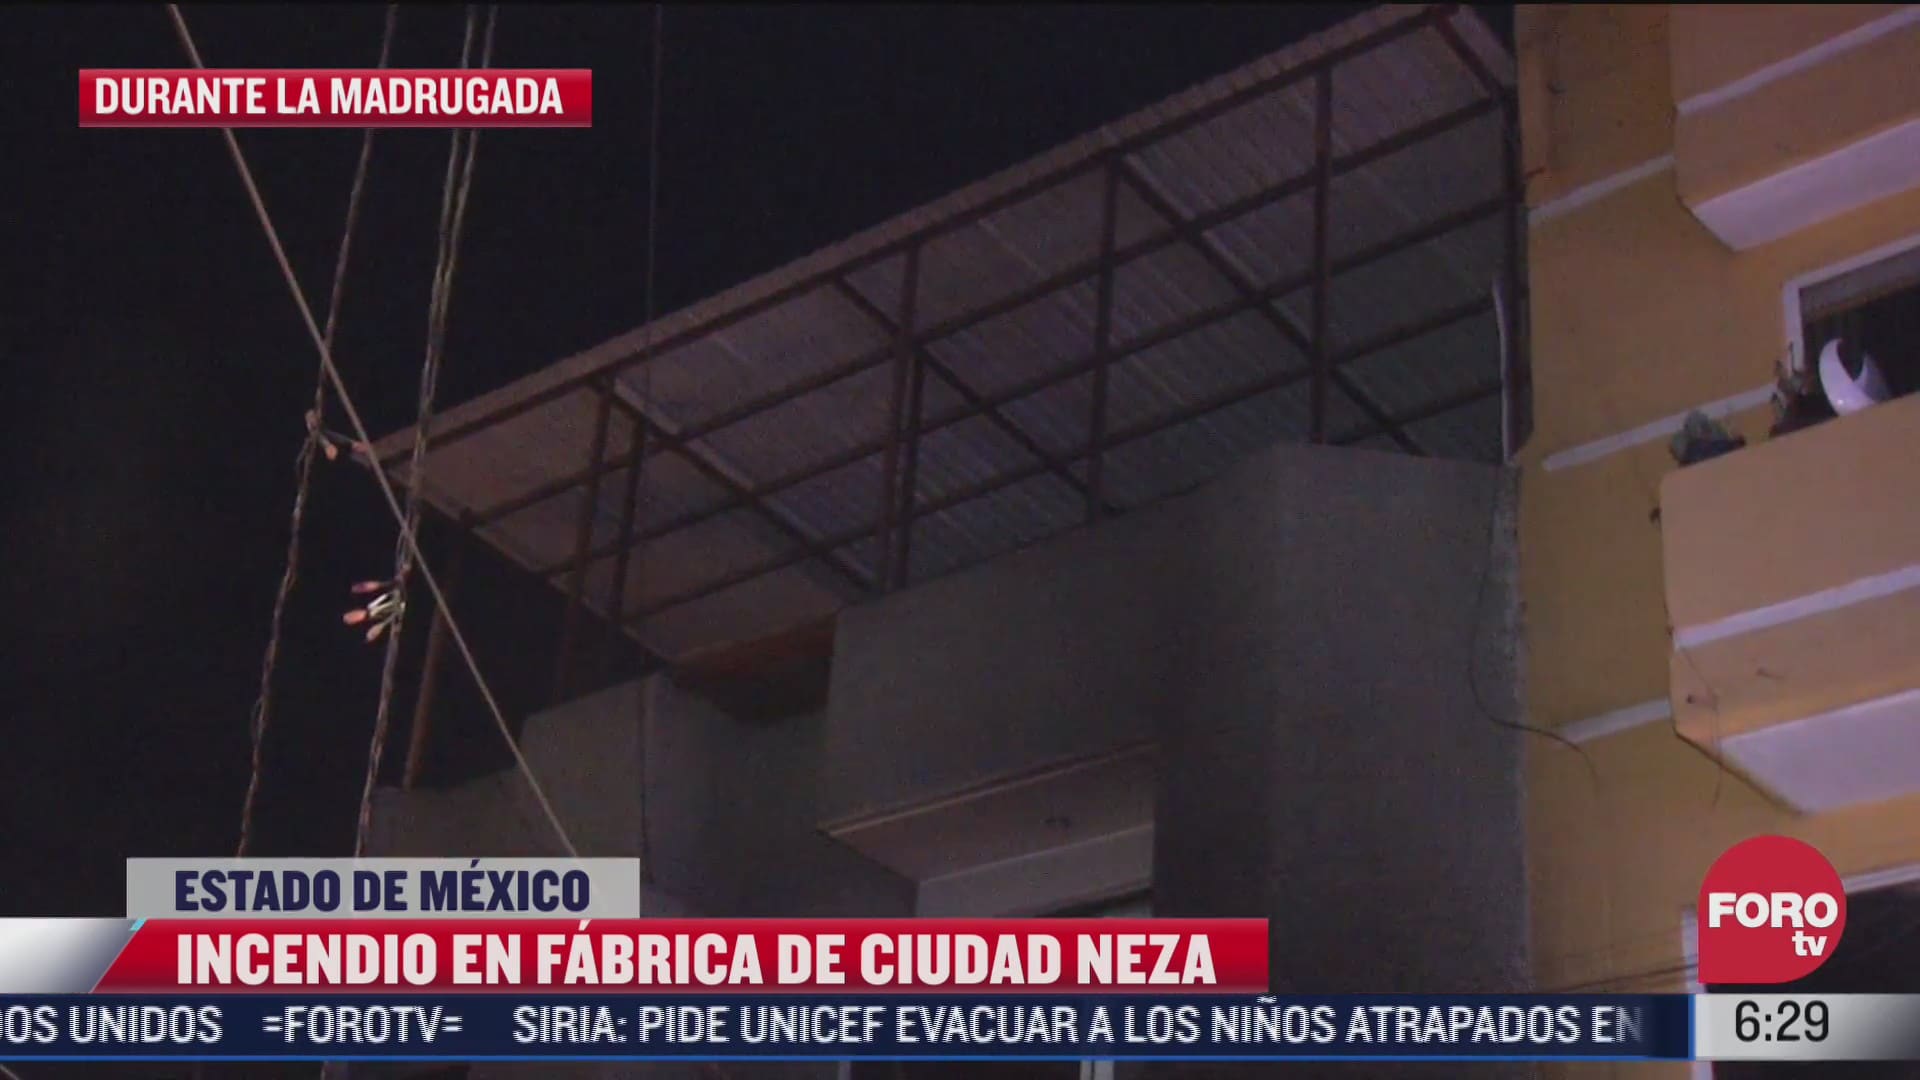 fuerte incendio movilizo a servicios de emergencia en nezahualcoyotl estado de mexico